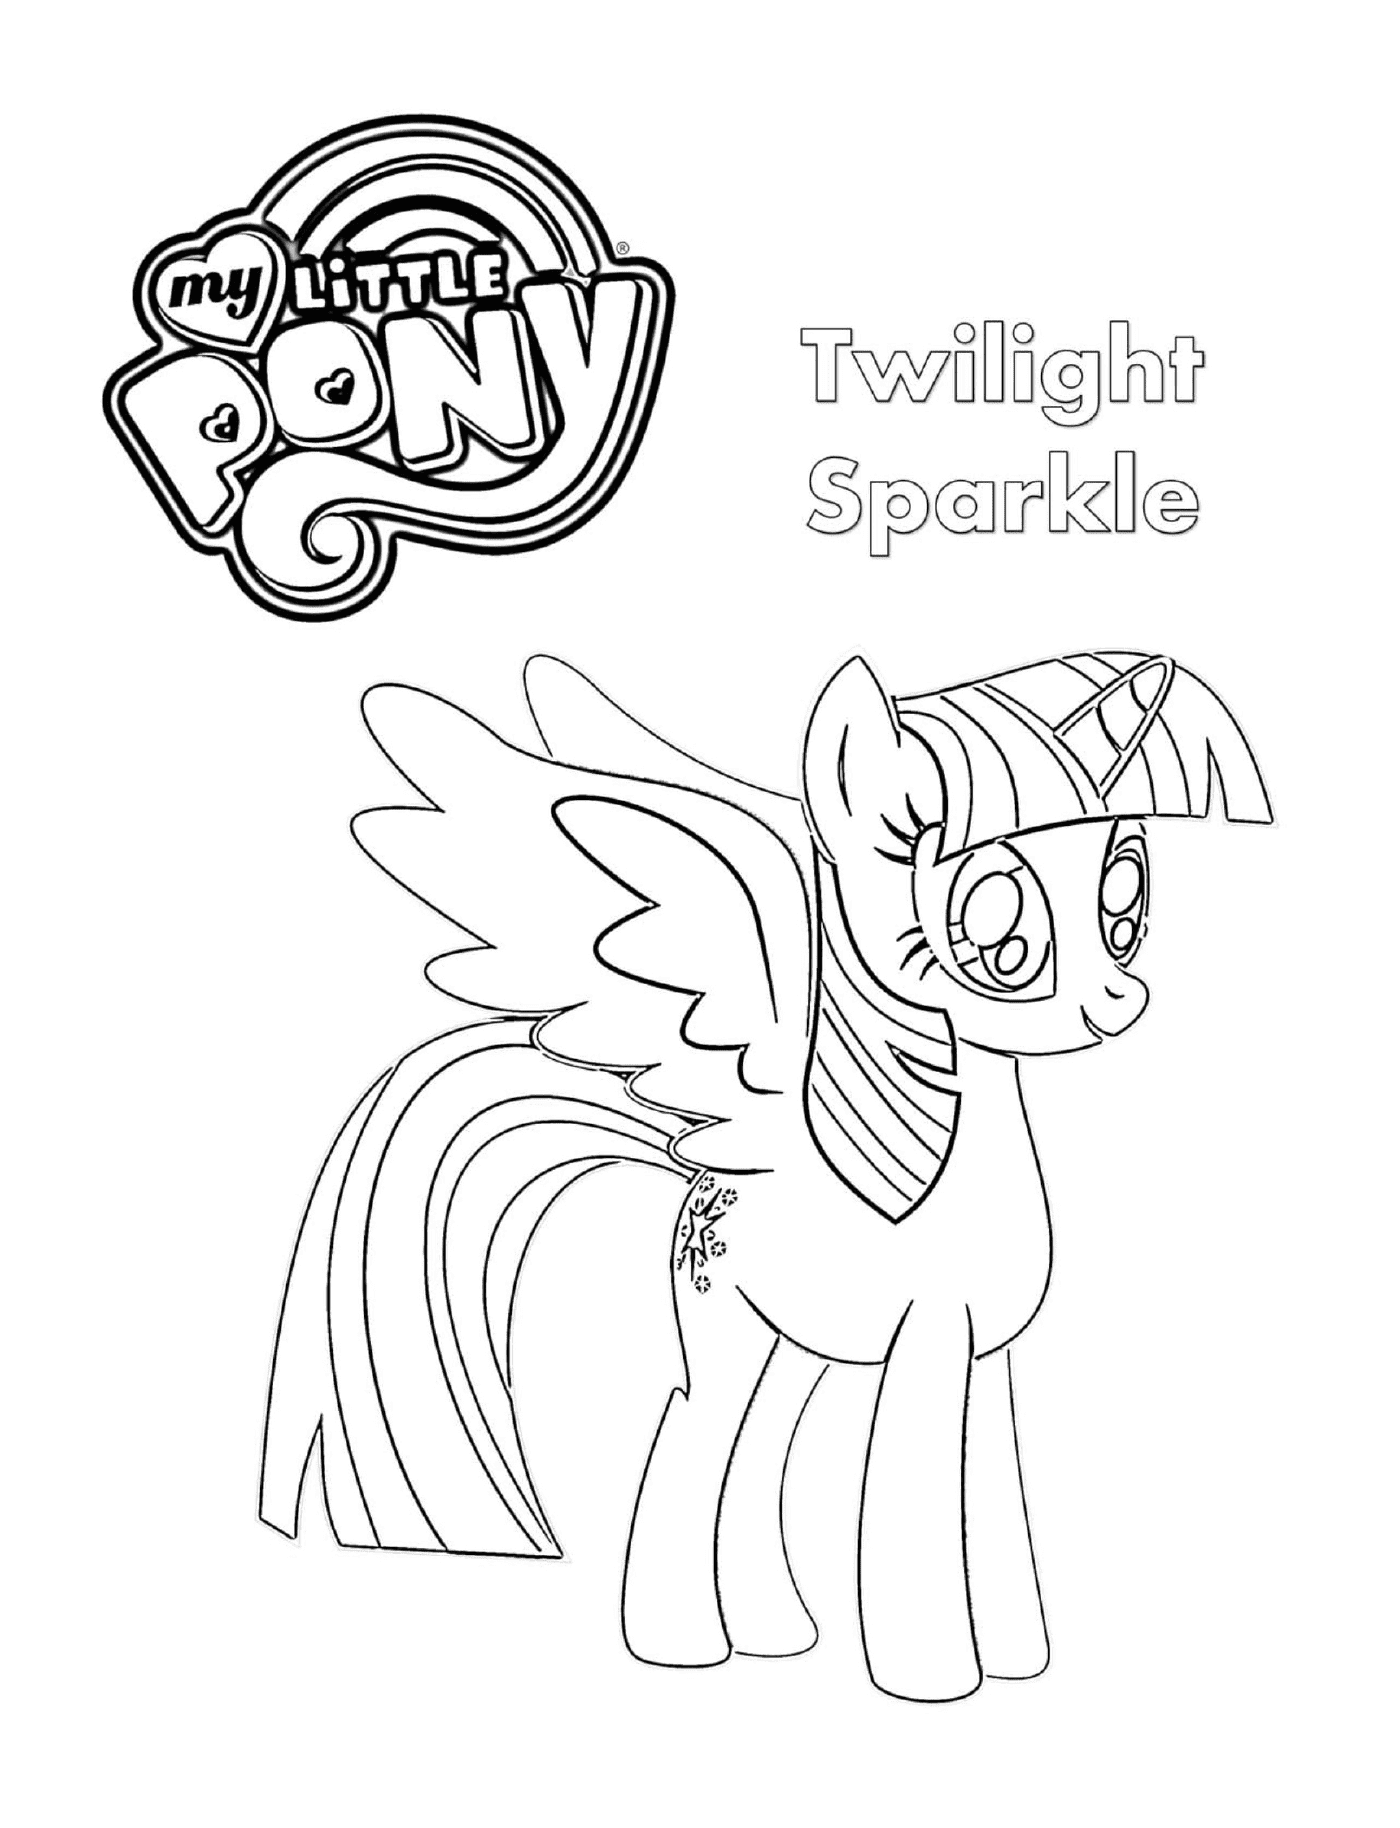   Twilight Sparkle, le poney dessiné 